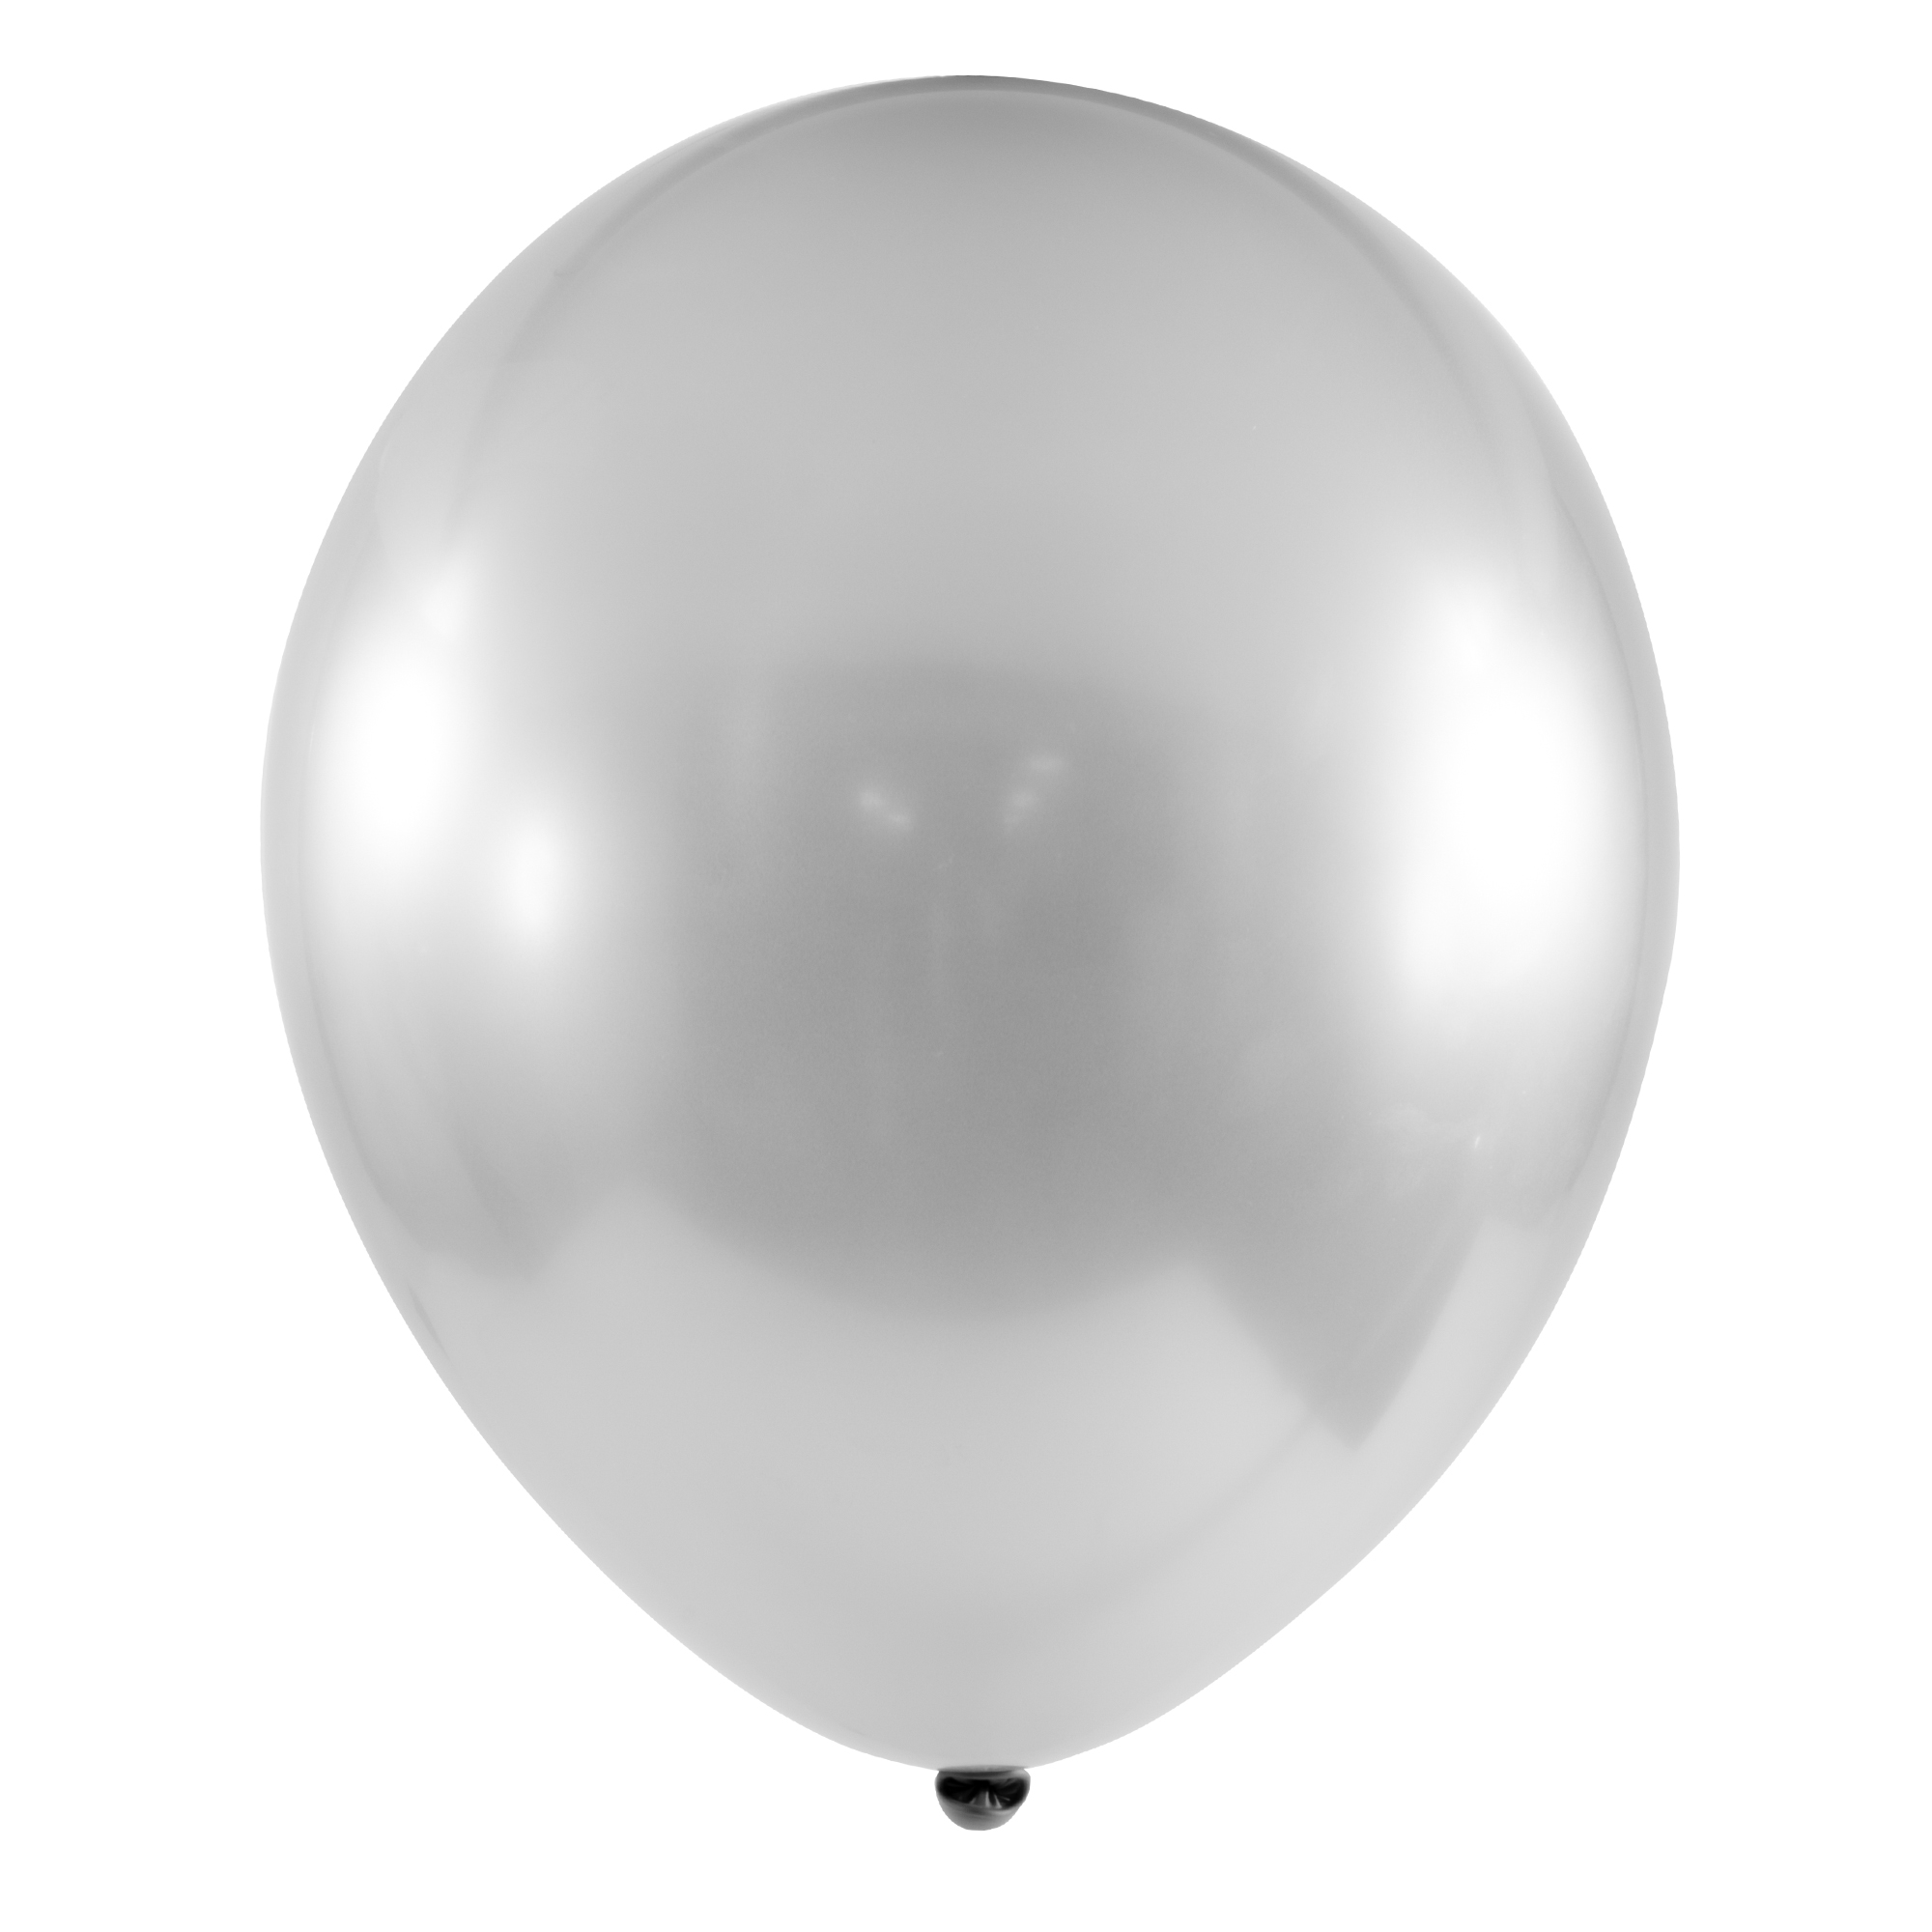 Chrome Latex Balloon 12" 50pc/bag - Silver